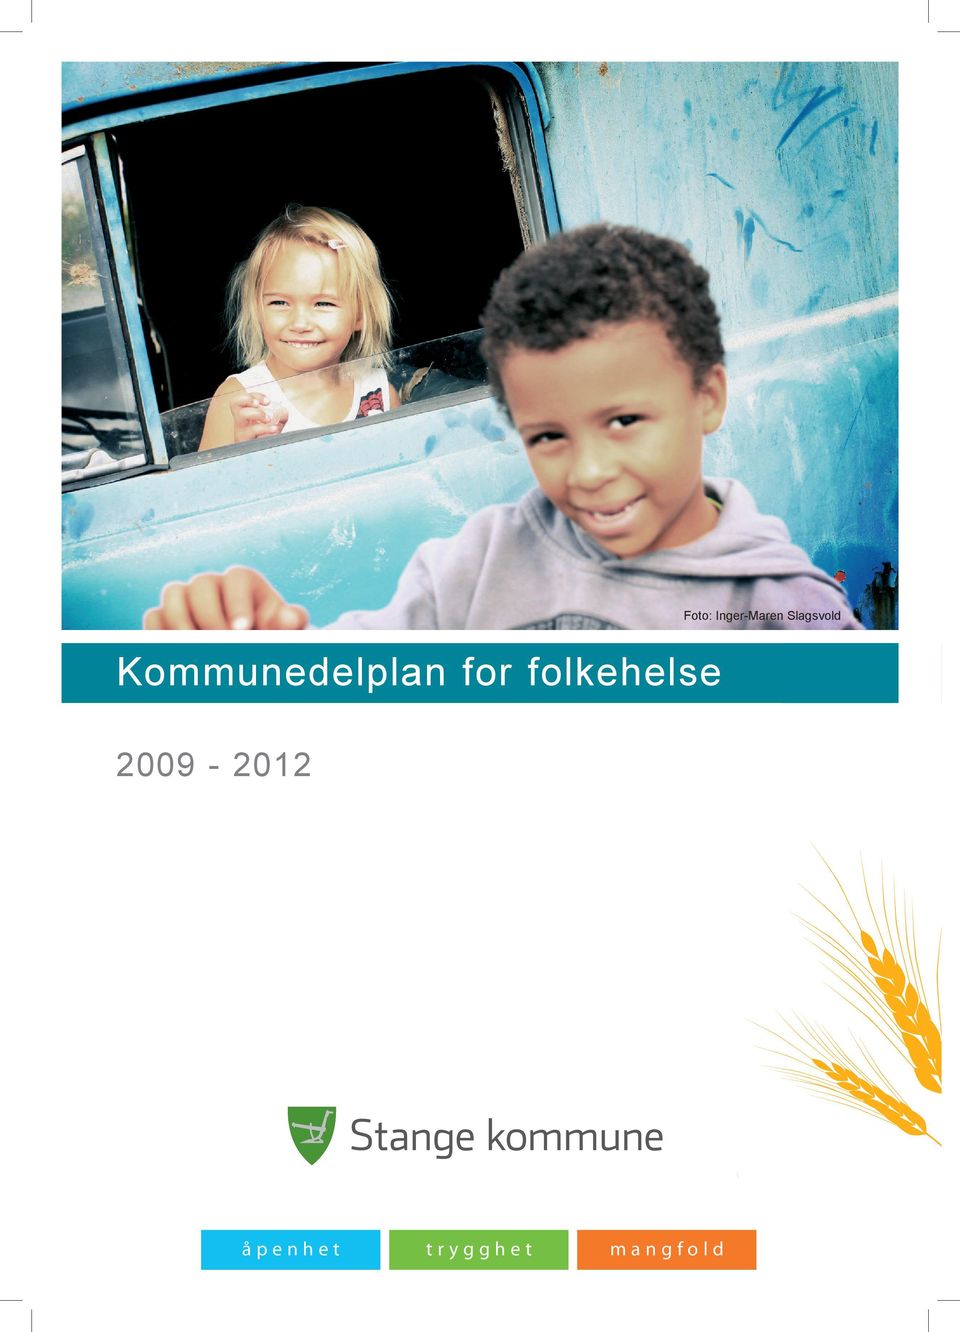 Kommunedelplan for folkehelse 2009 2009-2012 - 2012 2009 2009 -- 2012 2012 å p e nå h p e tn h e t p ee